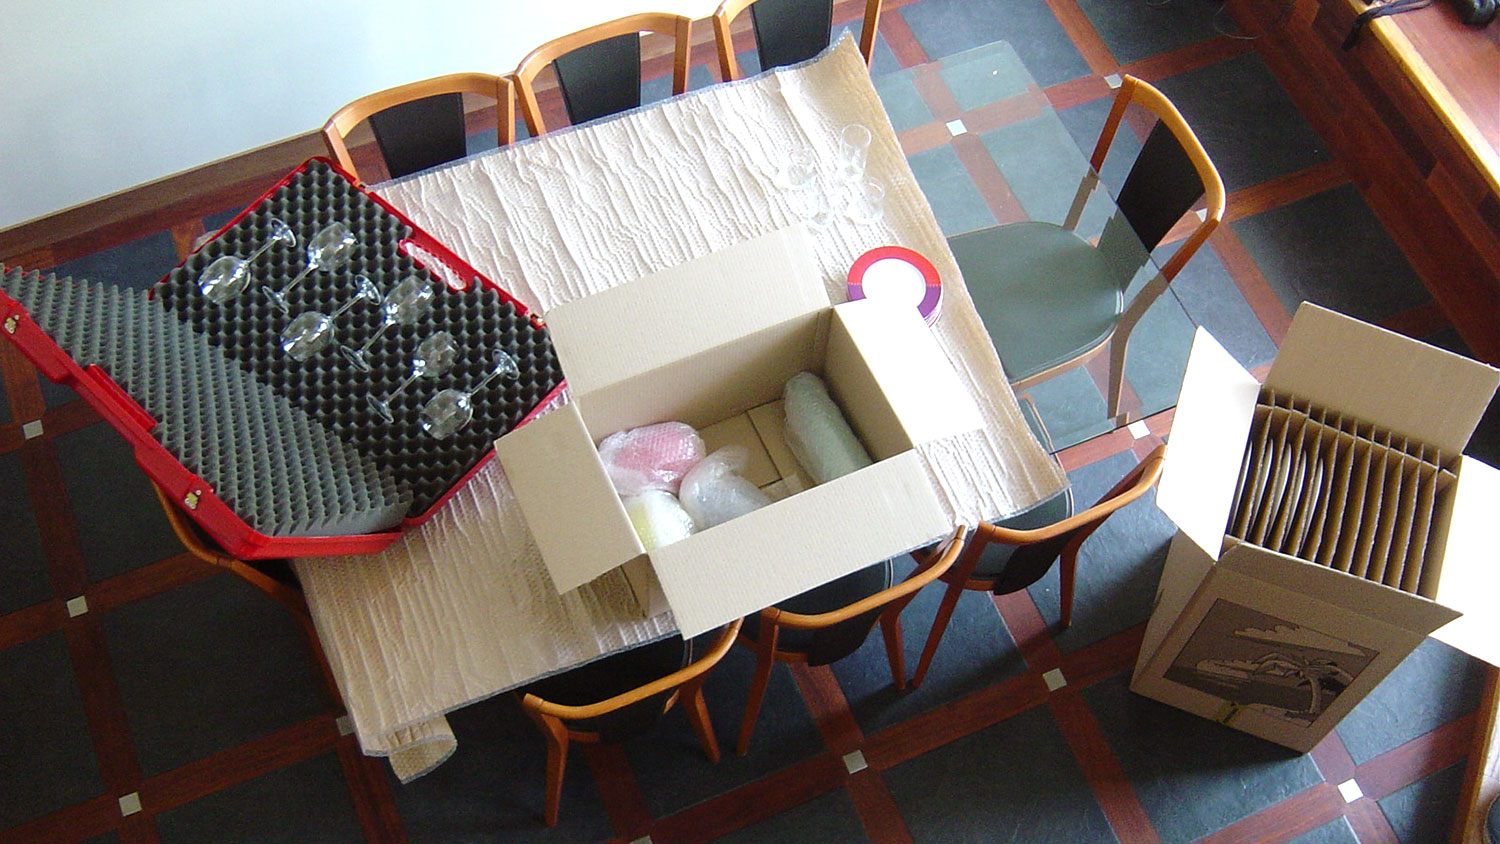 Boite de cartons pour déménagement avec valise pour ranger les objets précieux